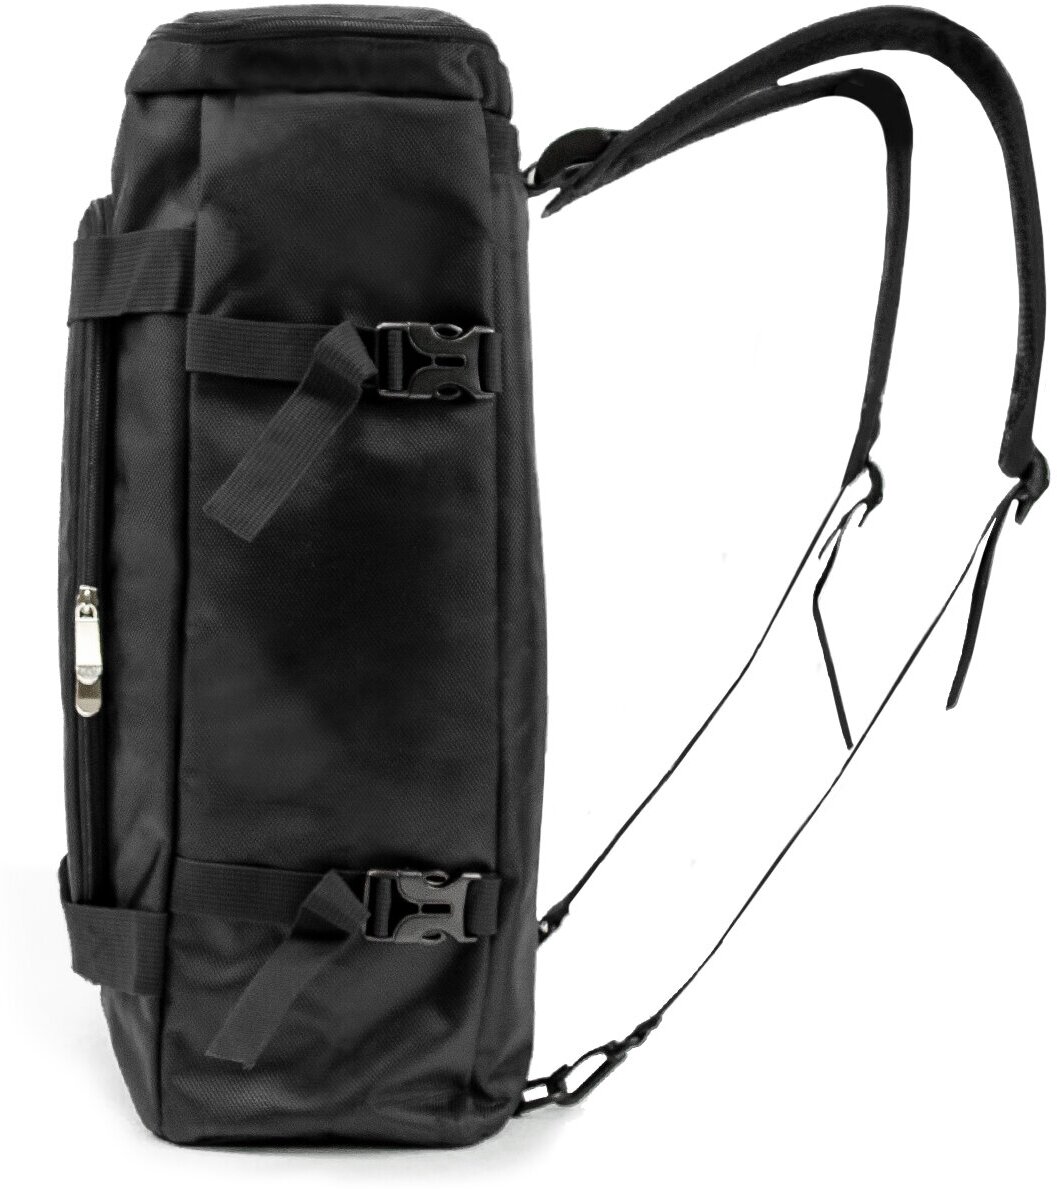 Рюкзак-спортивная сумка (22,5 л, черная) UrbanStorm трансформер большой размер для фитнеса, отдыха \ школьный для мальчиков, девочек - фотография № 15